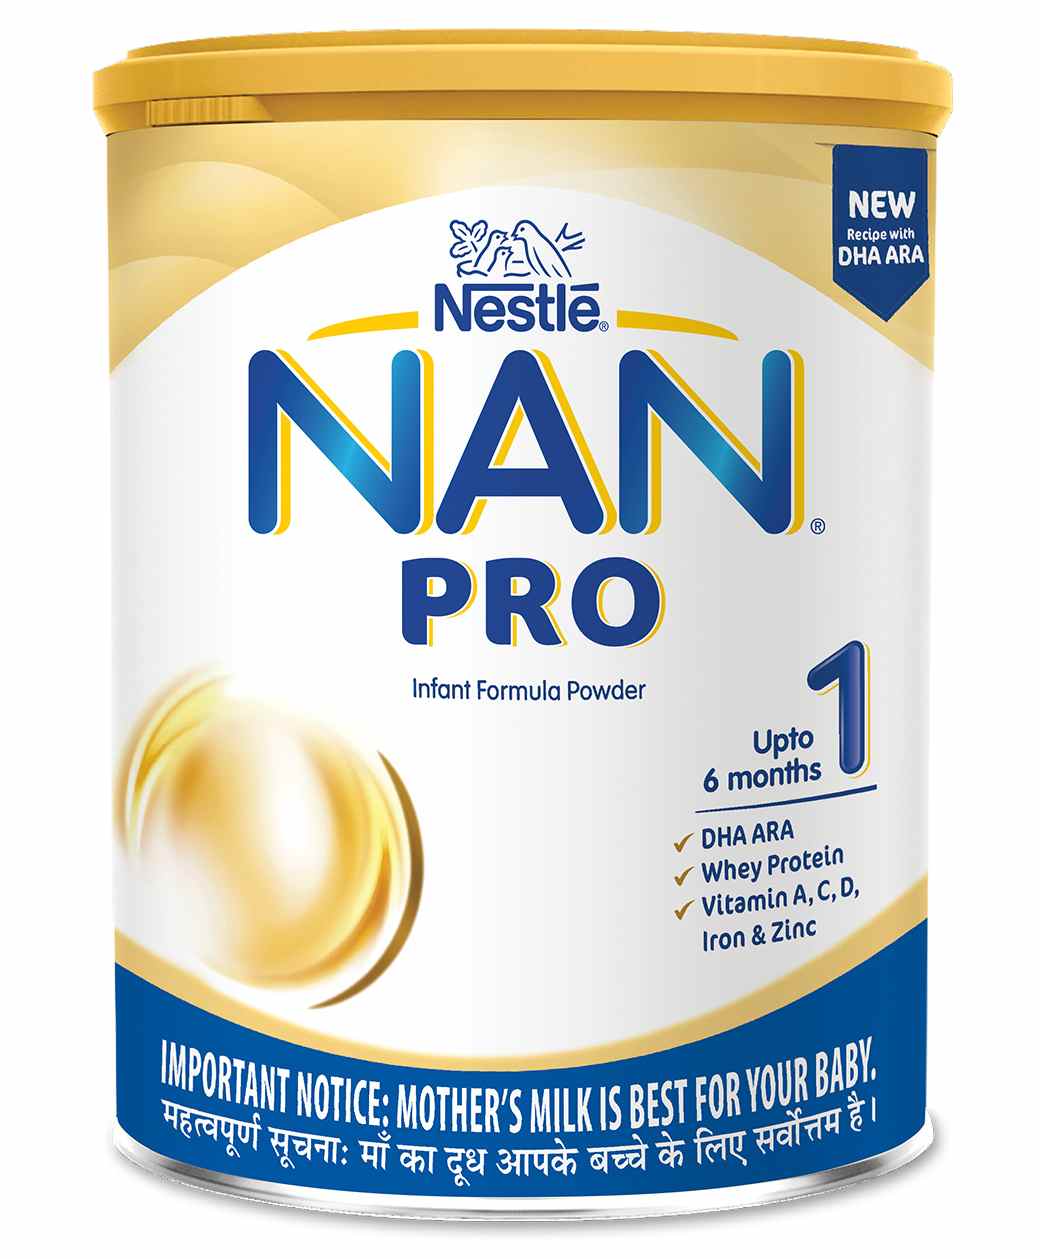 Nestle Nan Pro 1 Infant Formula Powder Tin, 400 gm